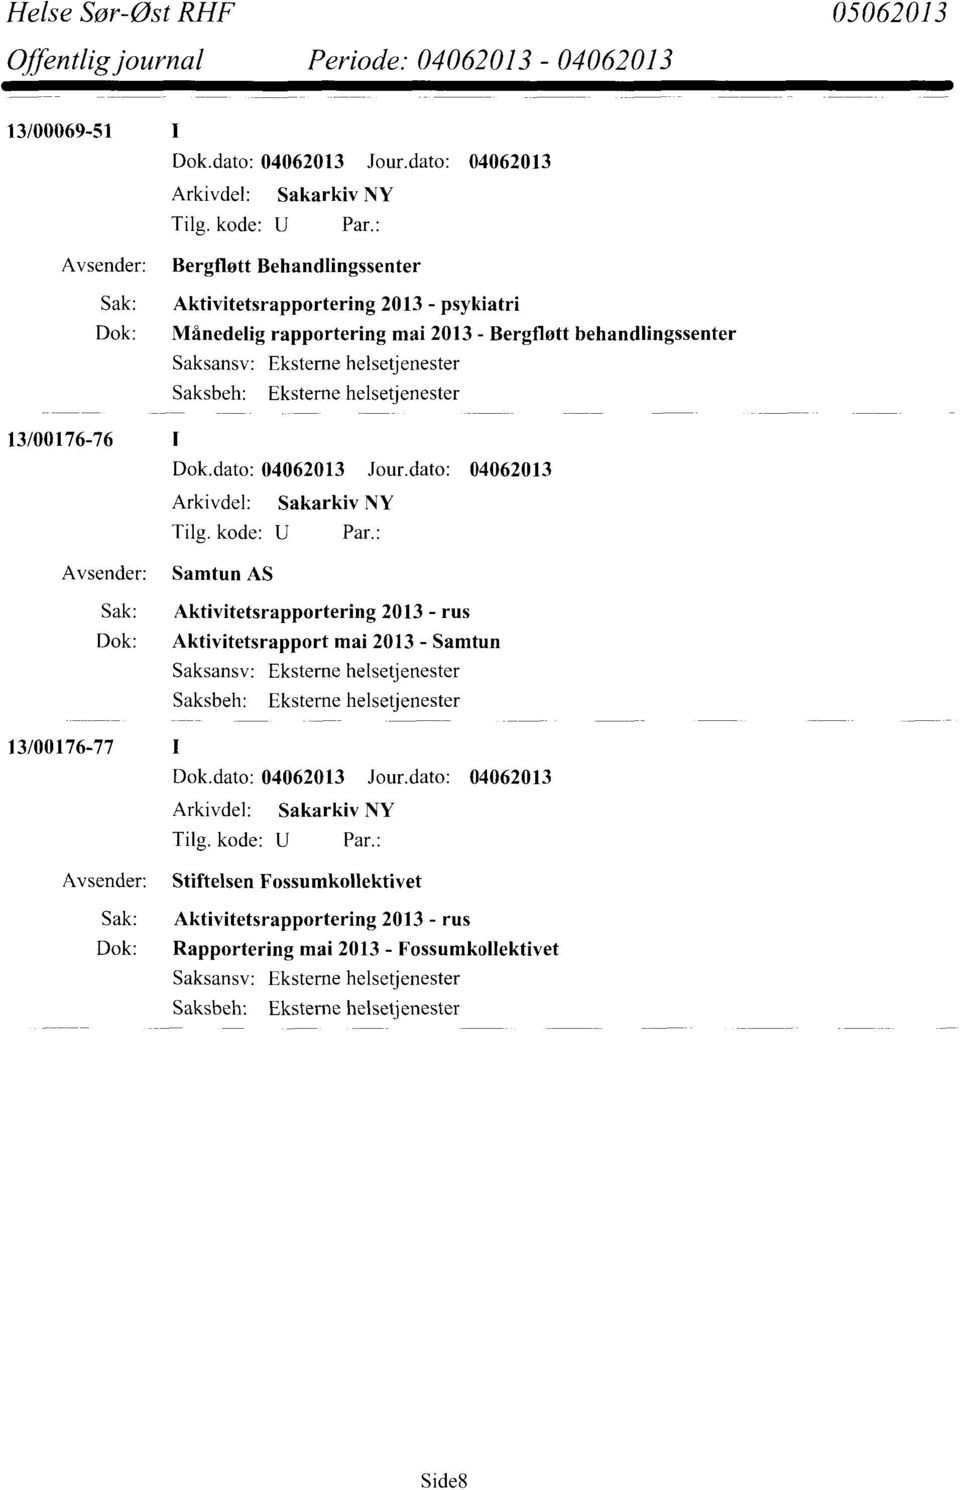 Sak: Aktivitetsrapportering 2013 - rus Dok: Aktivitetsrapport mai 2013 - Samtun Saksansv: Eksteme helsetjenester 13/00176-77